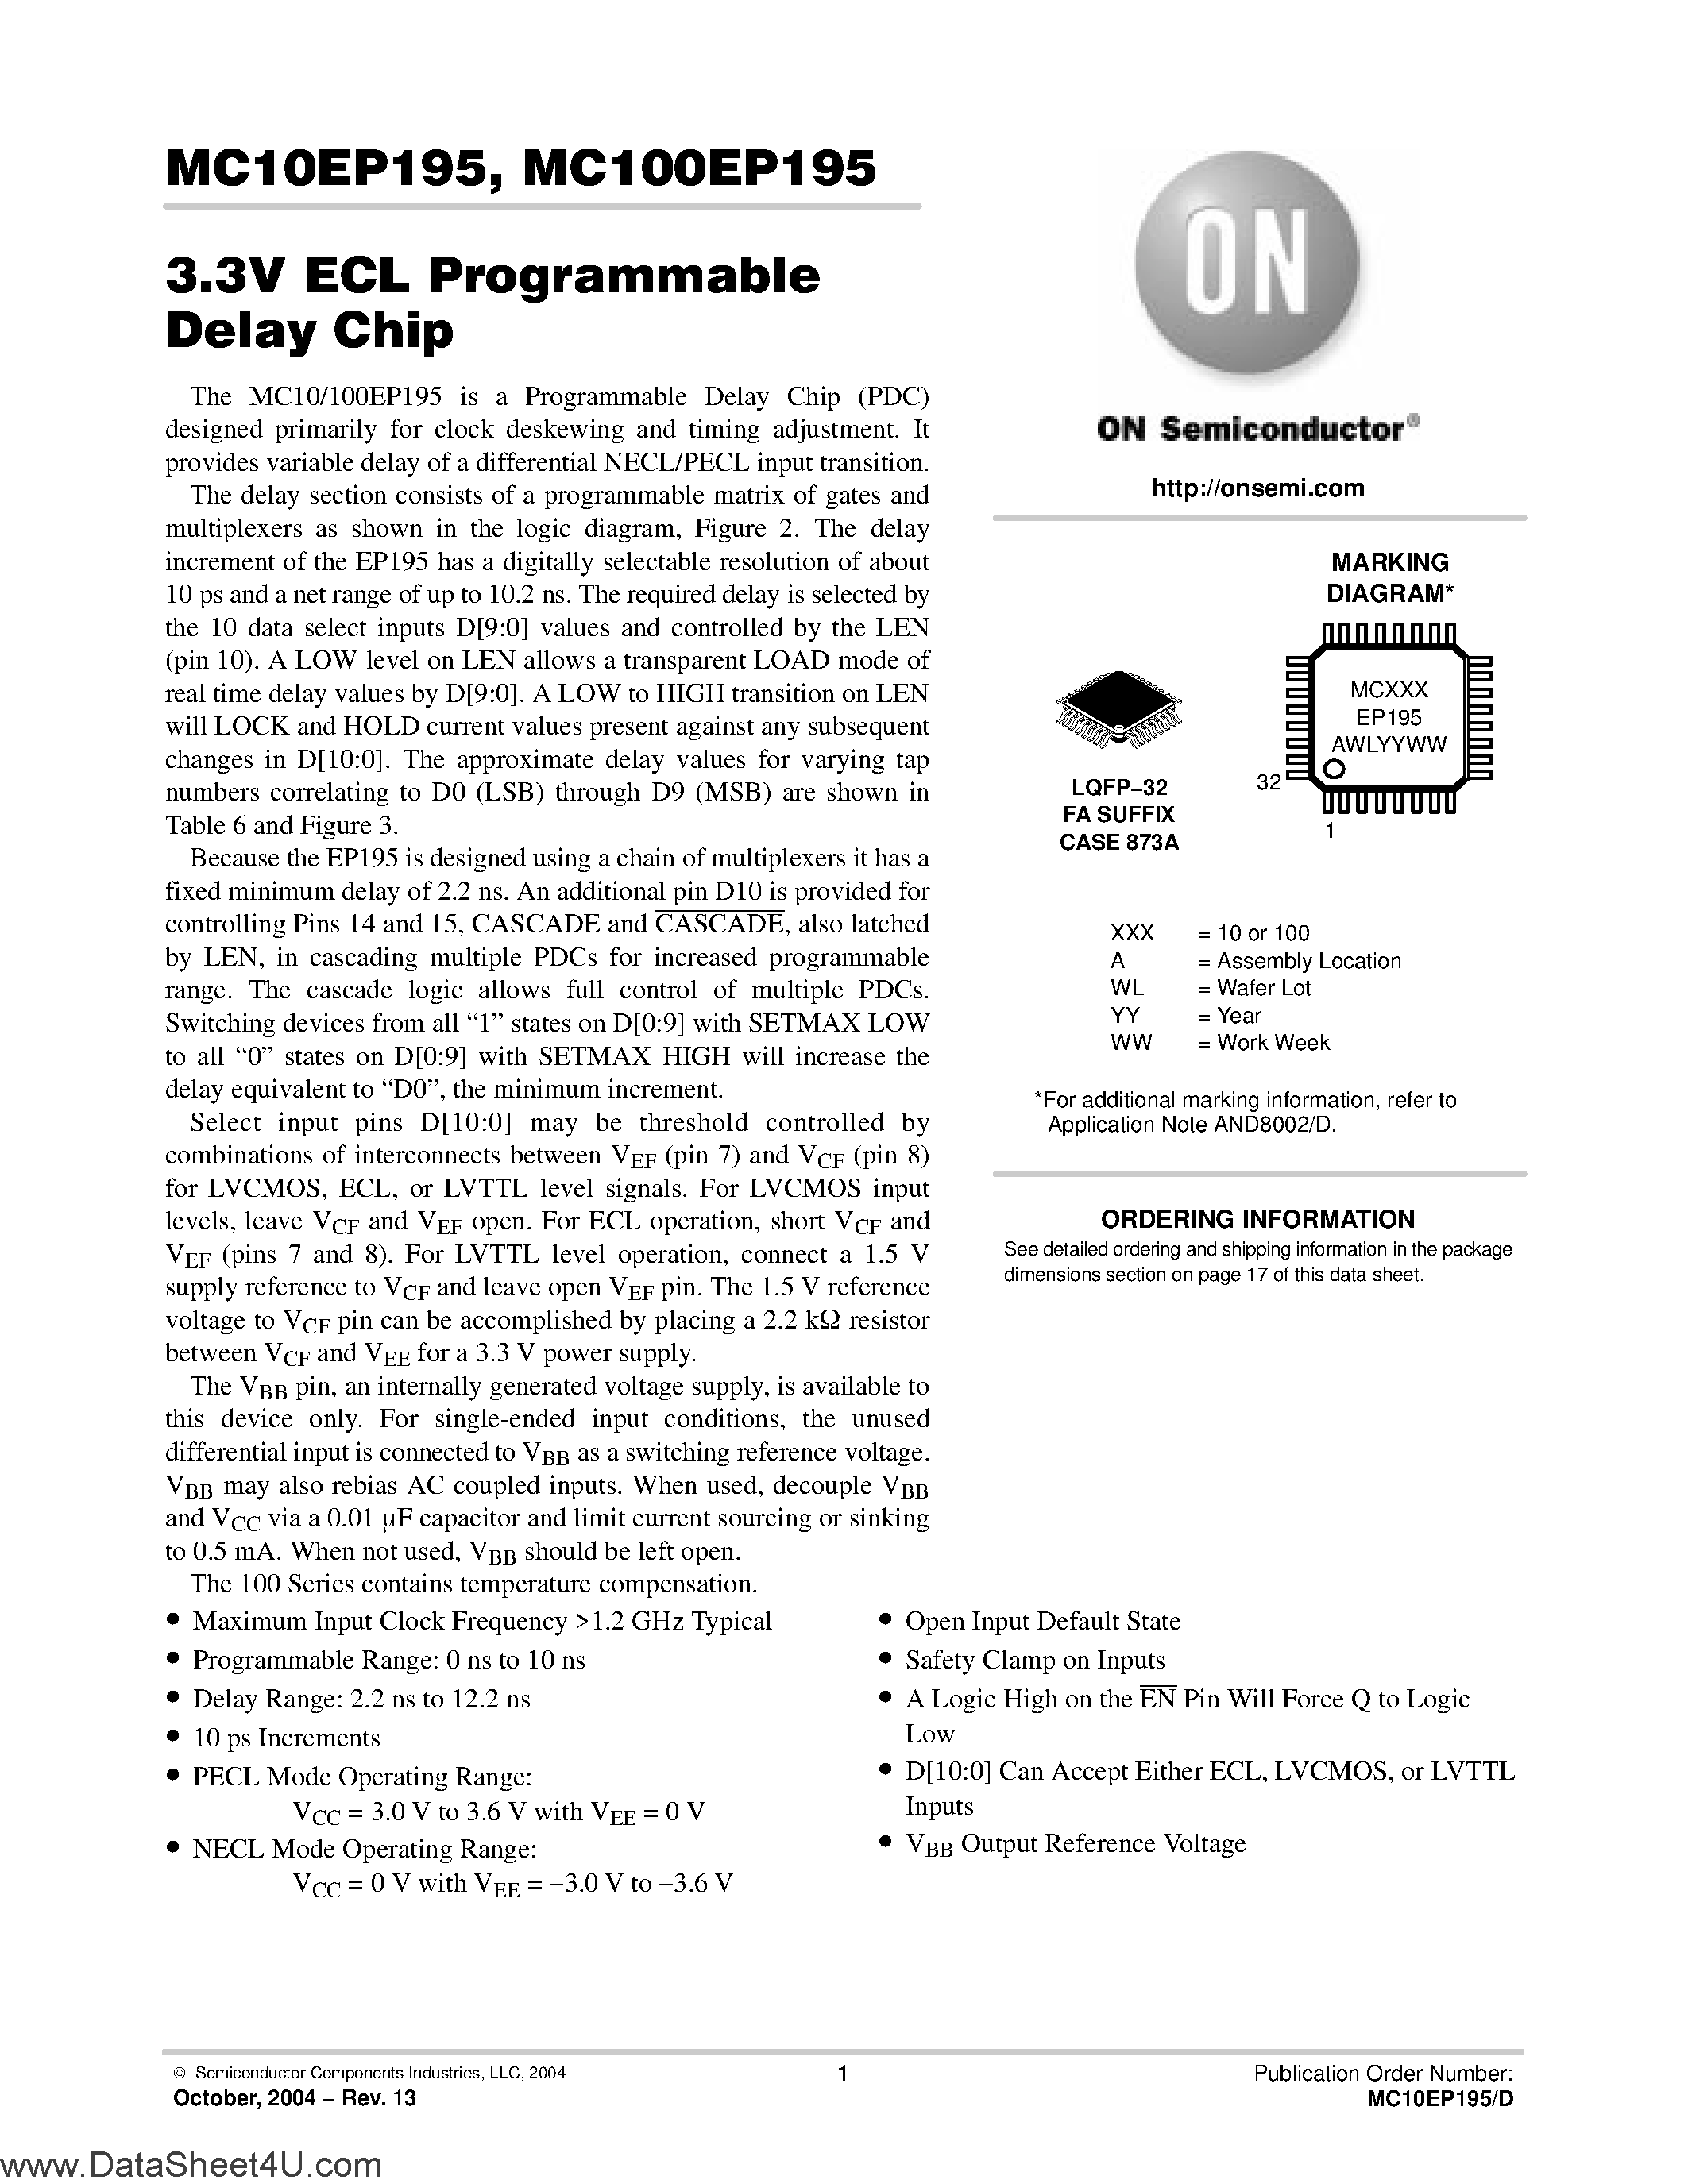 Даташит MC100EP195 - (MC100EP195 / MC10EP195) 3.3V ECL Programmable Delay Chip страница 1